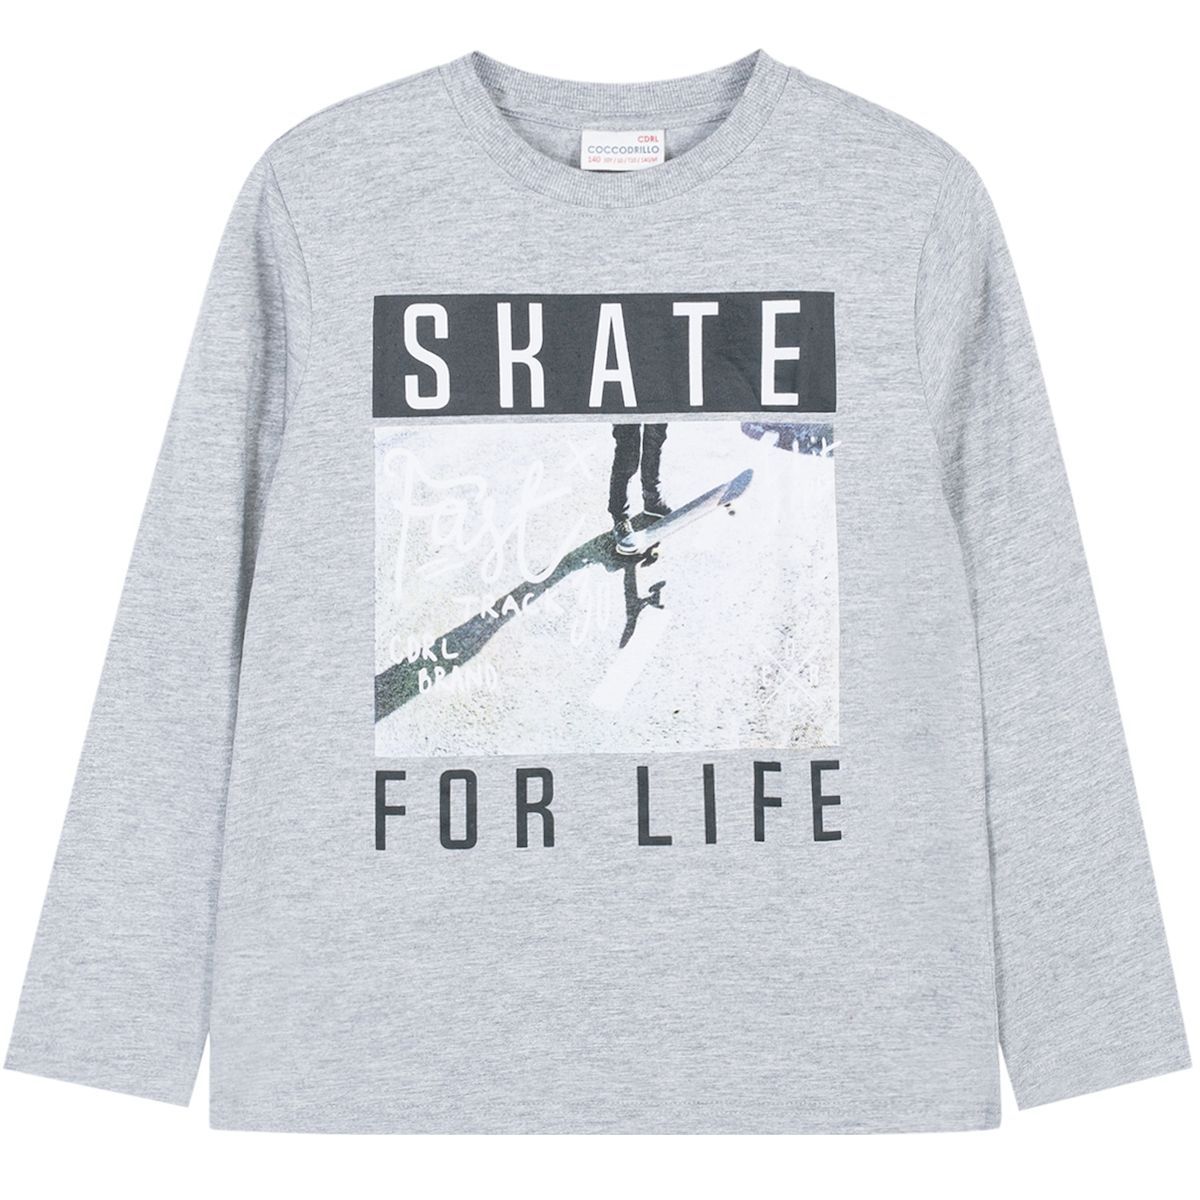    Coccodrillo Skate For Life, : . W191431M2SKA.  146